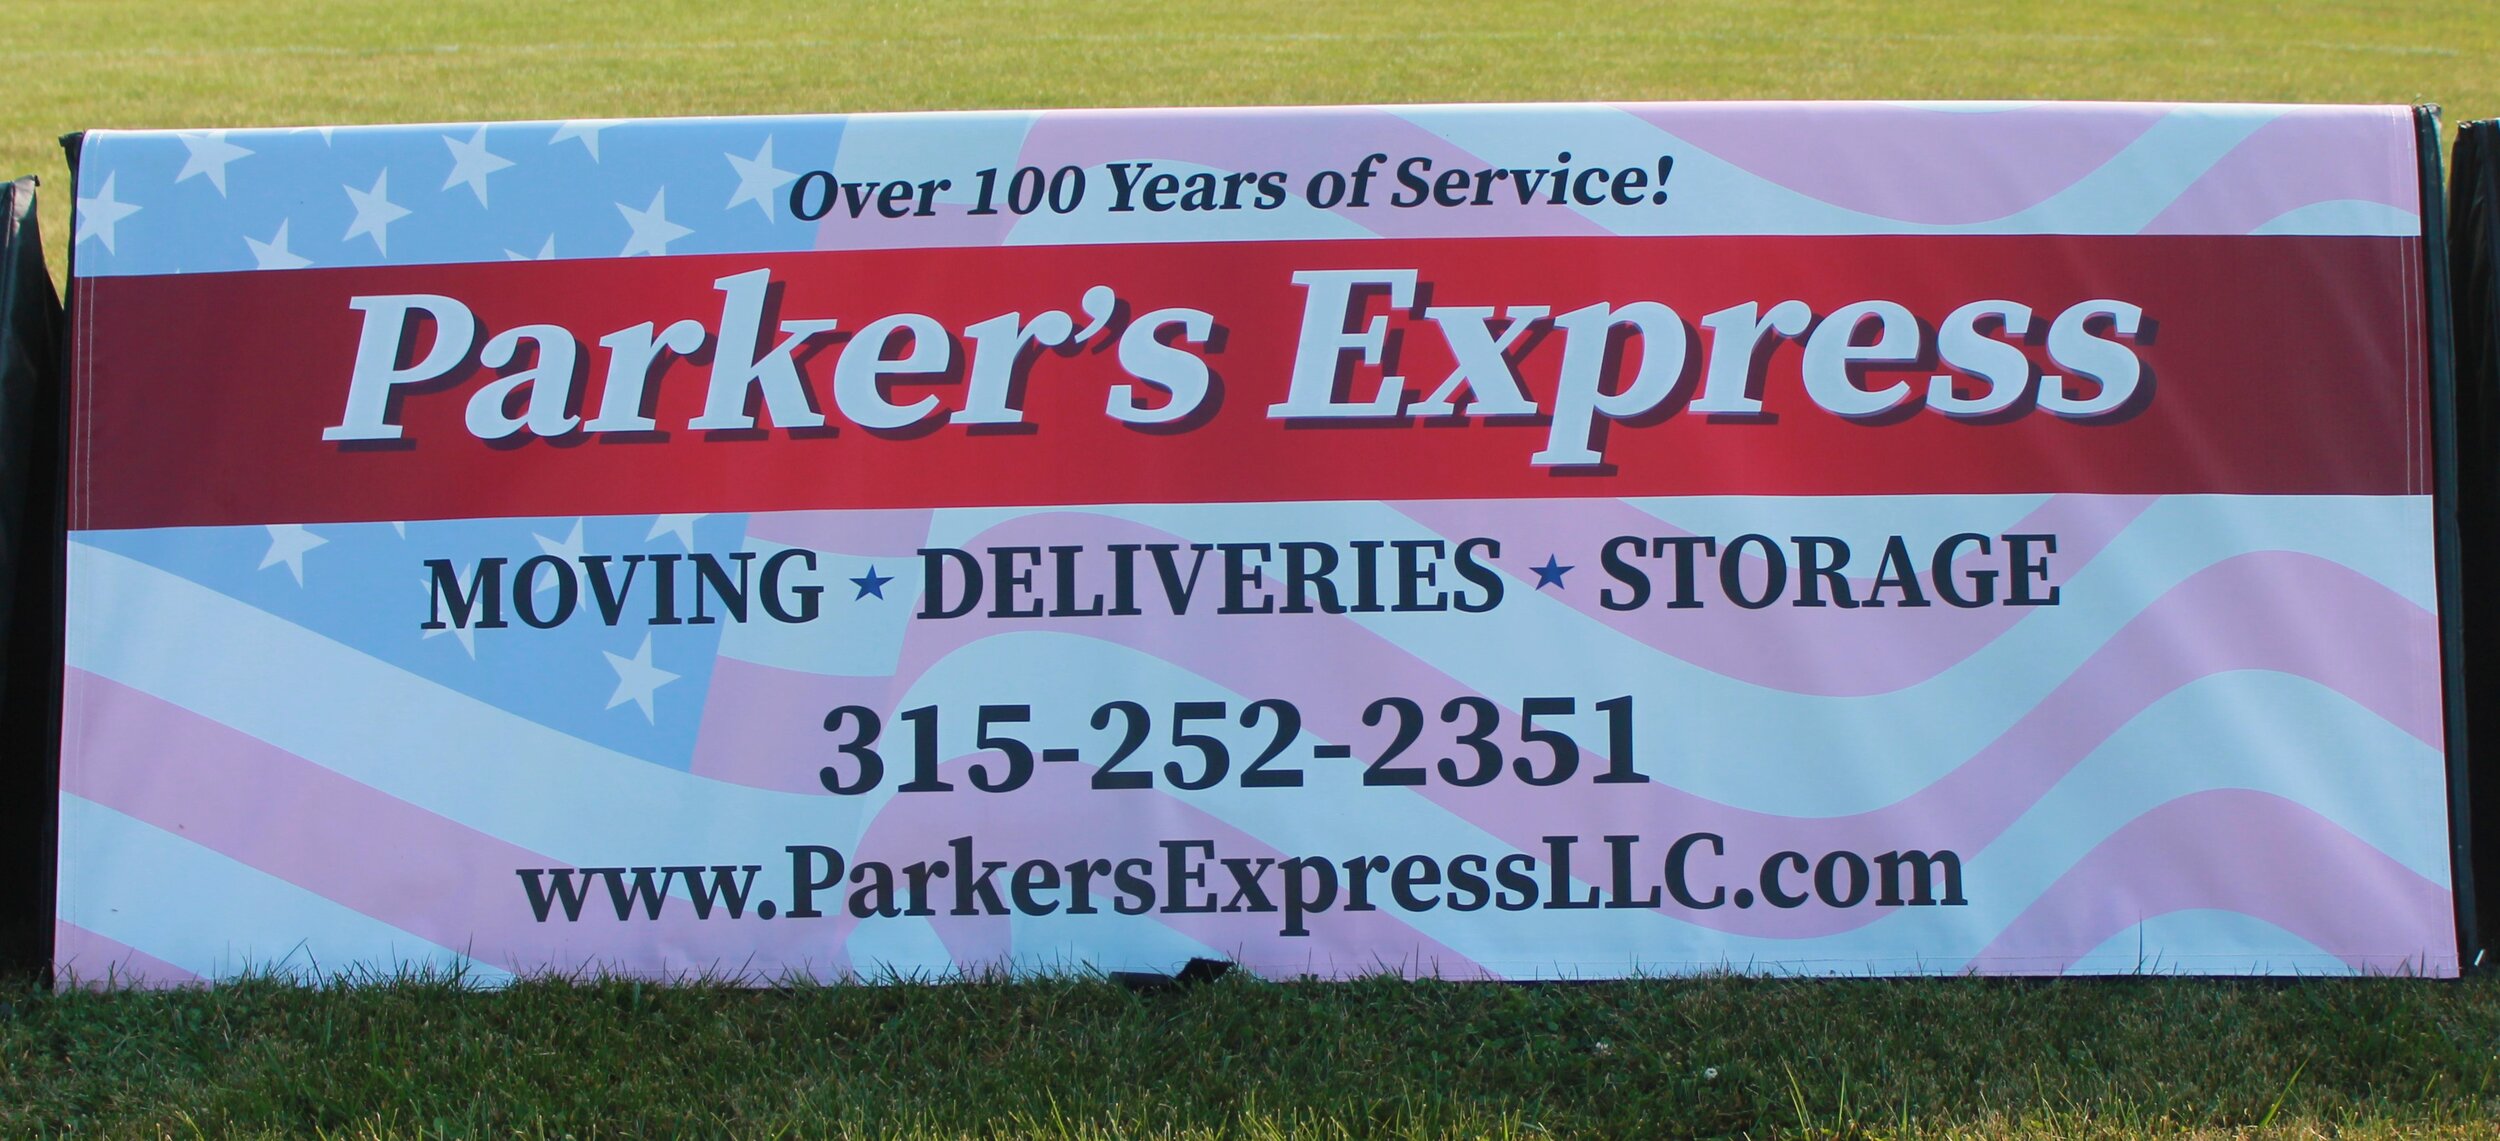 Parker's Express.jpg